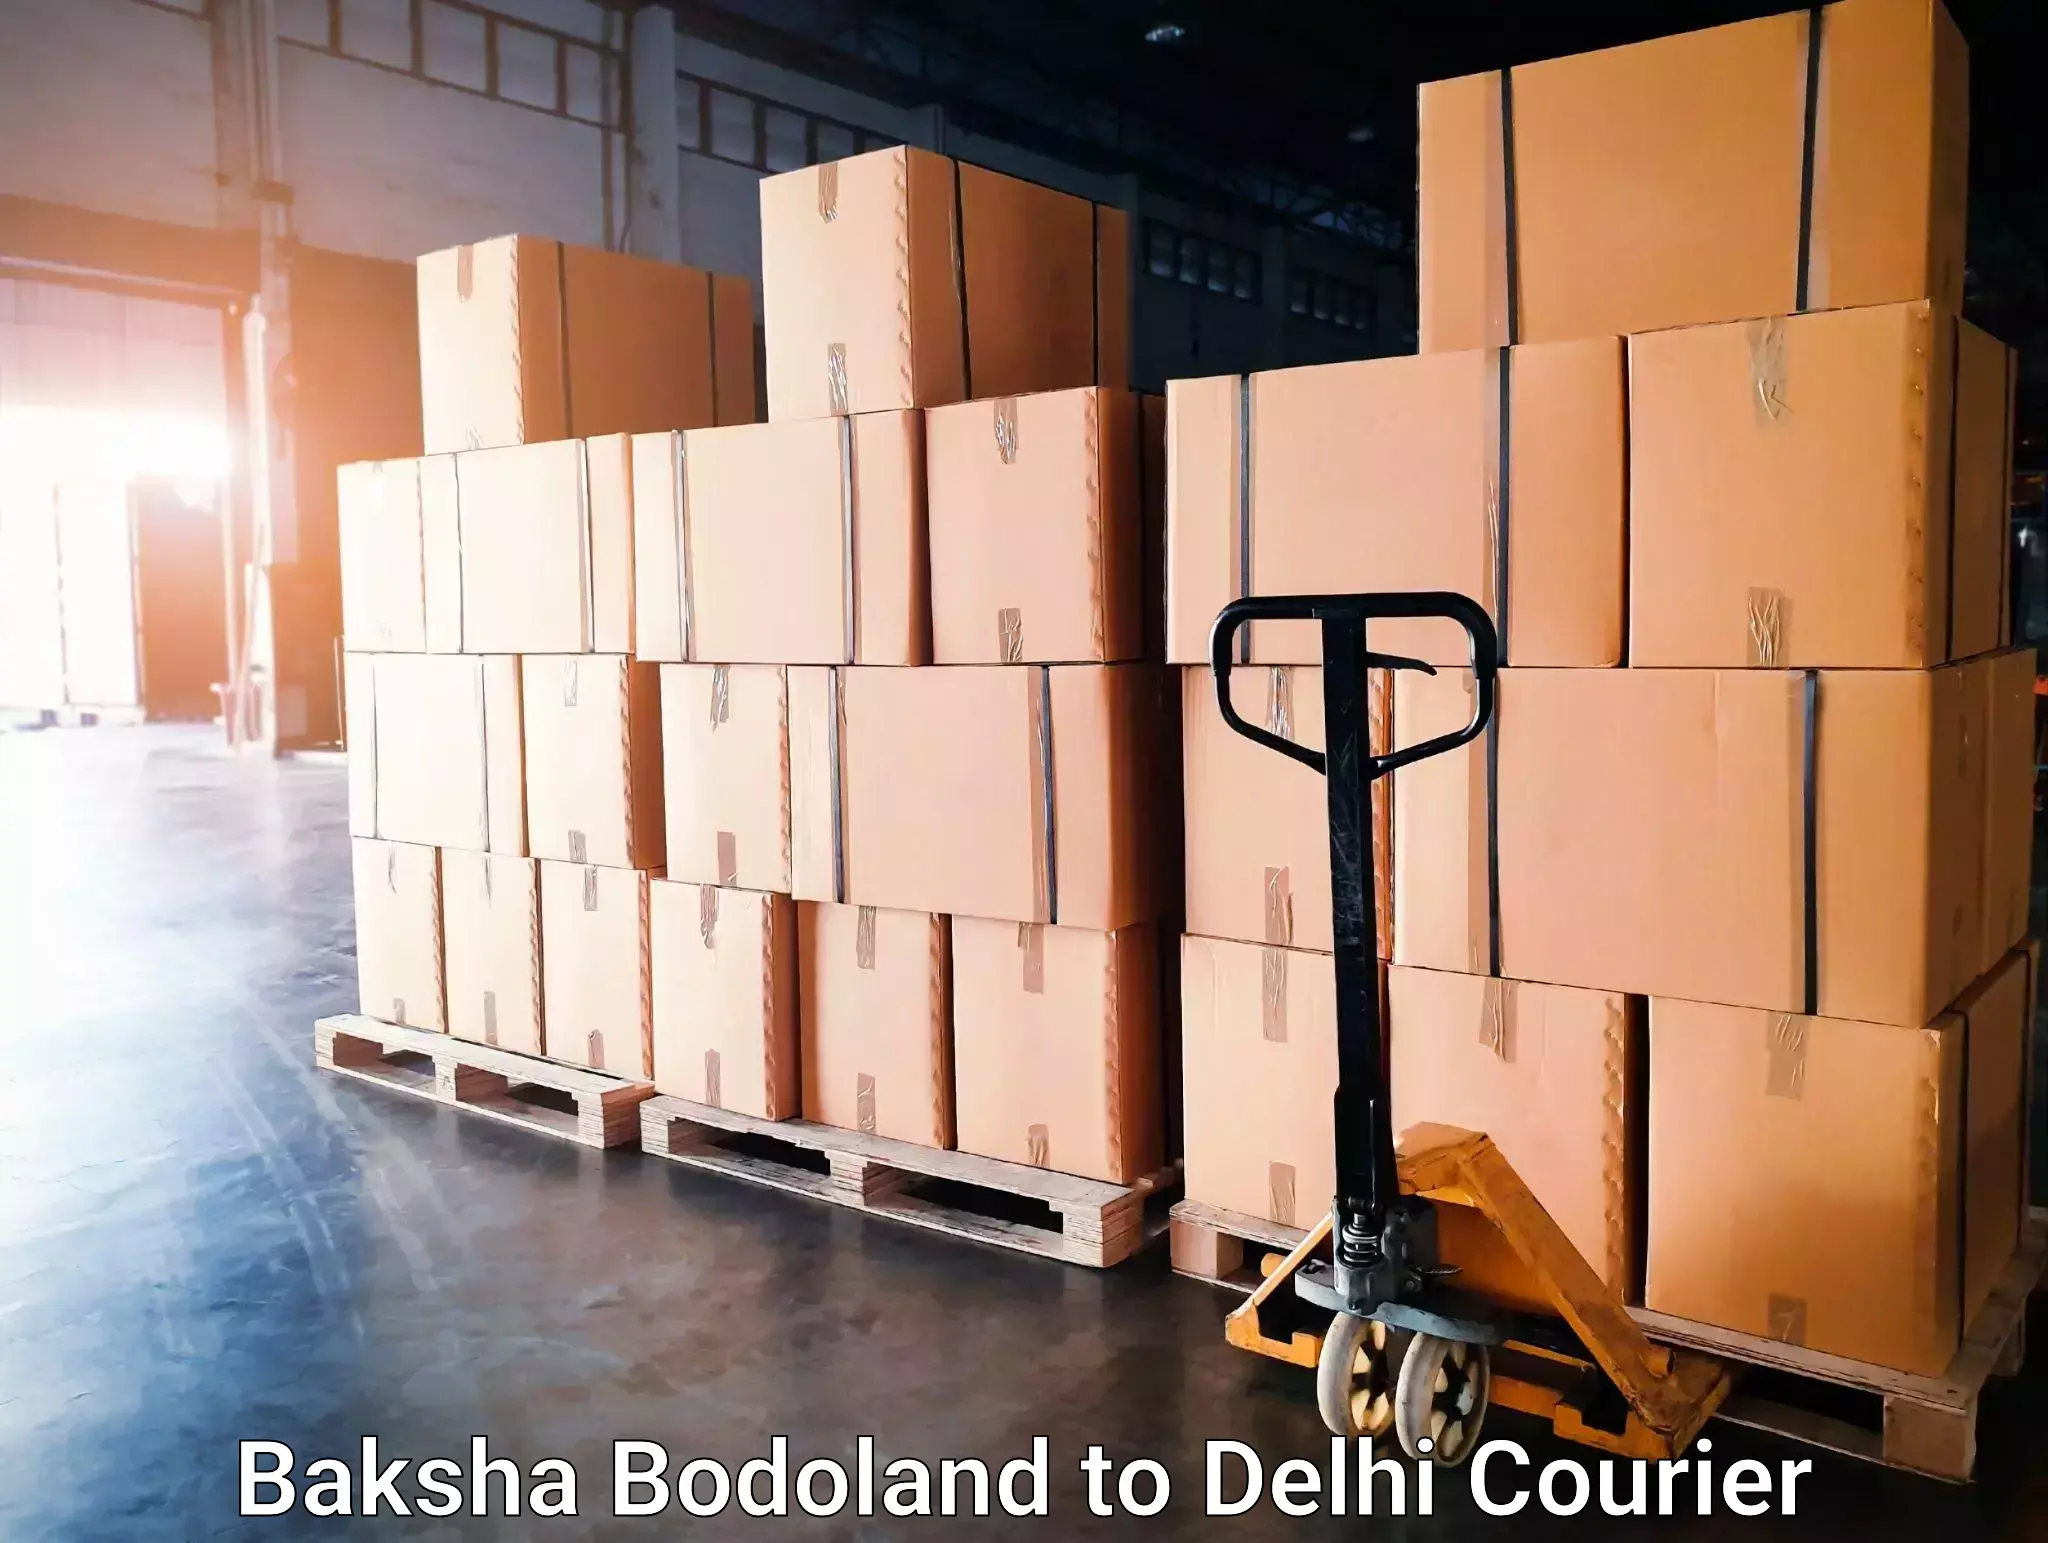 State-of-the-art courier technology Baksha Bodoland to Delhi